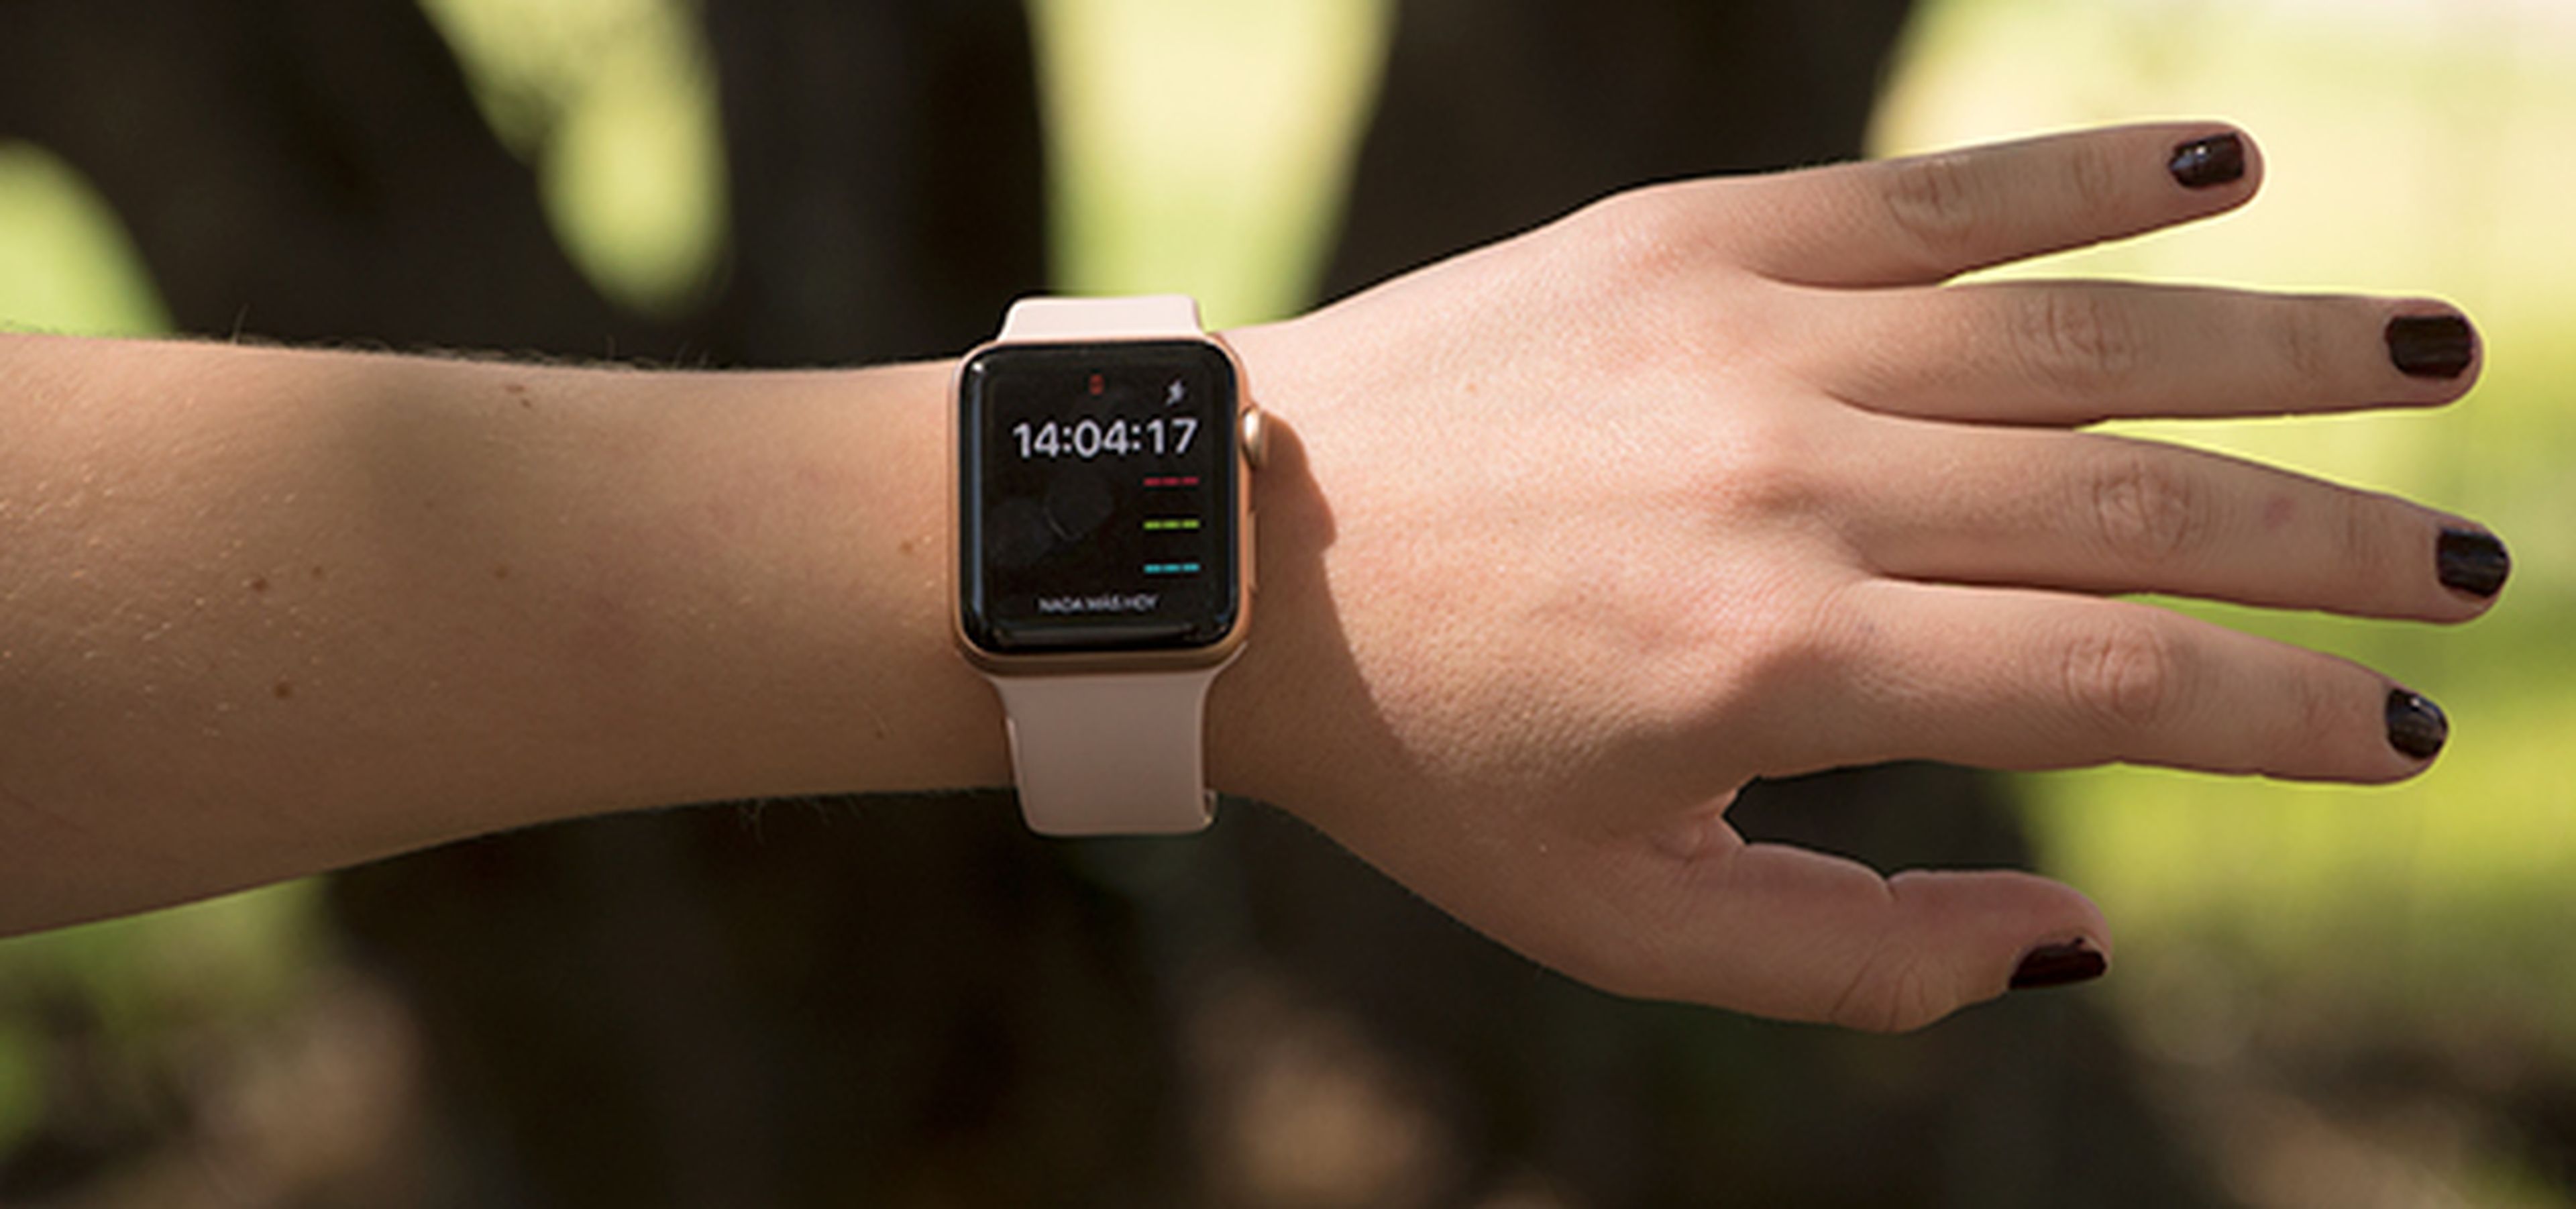 Pasa el ratón por encima de la imagen para ver las diferencias entre el Fitbit Ionic y el Apple Watch Series 3